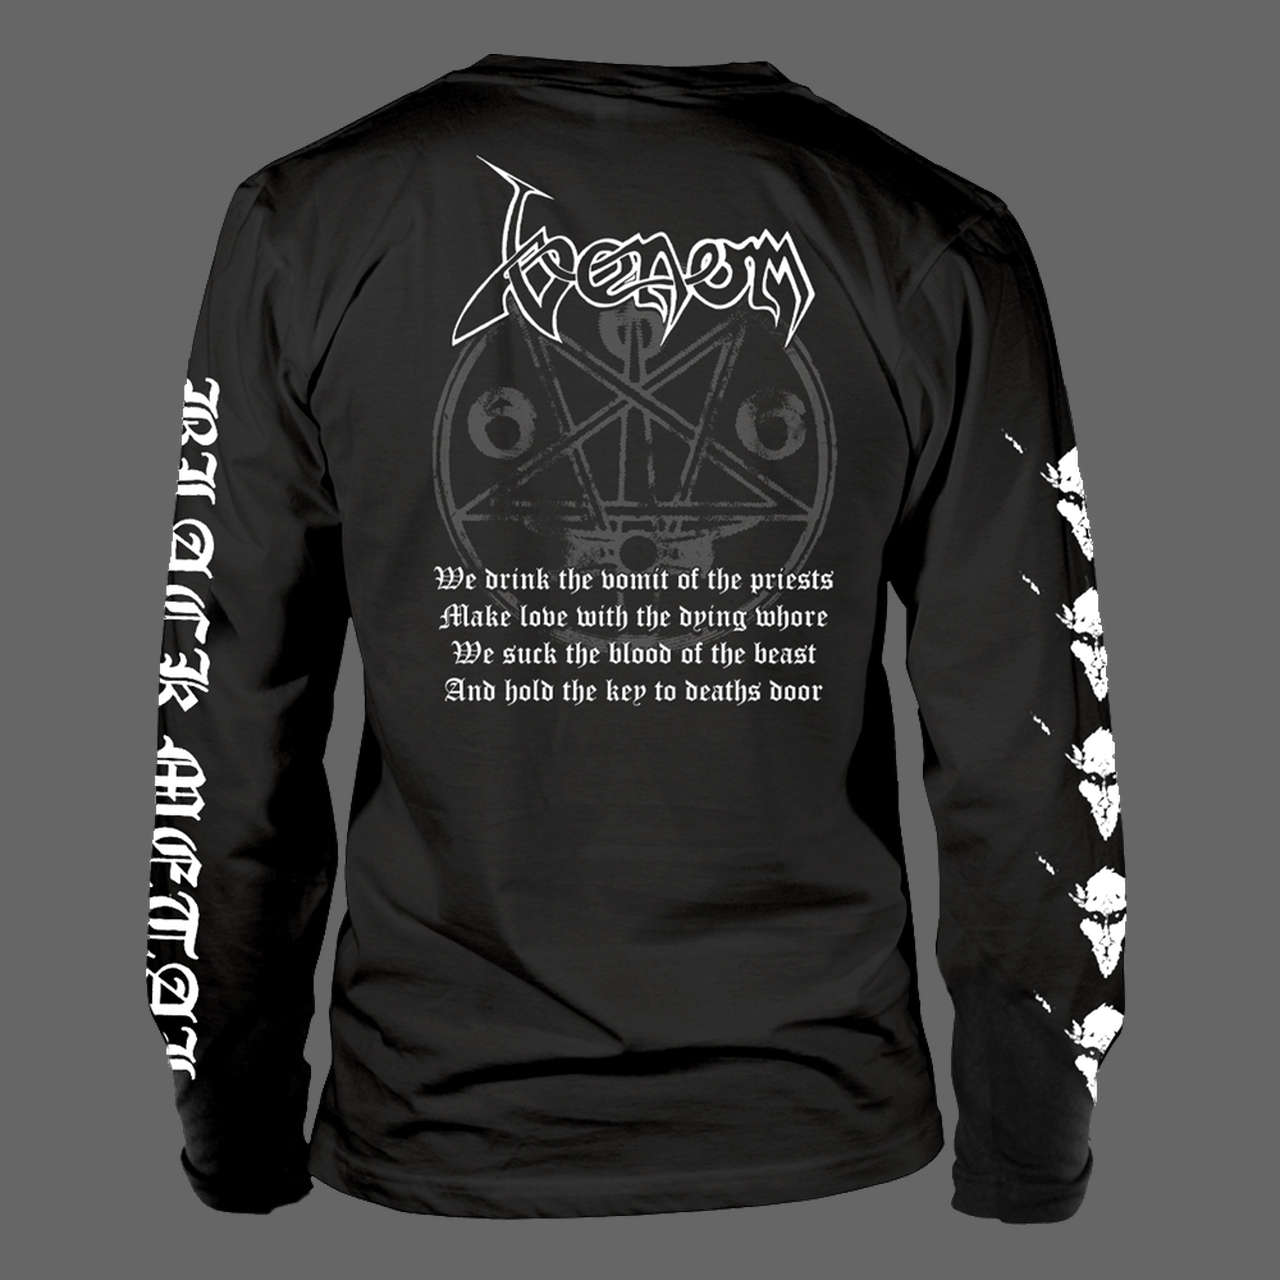 Venom - Black Metal (White) (Long Sleeve T-Shirt)